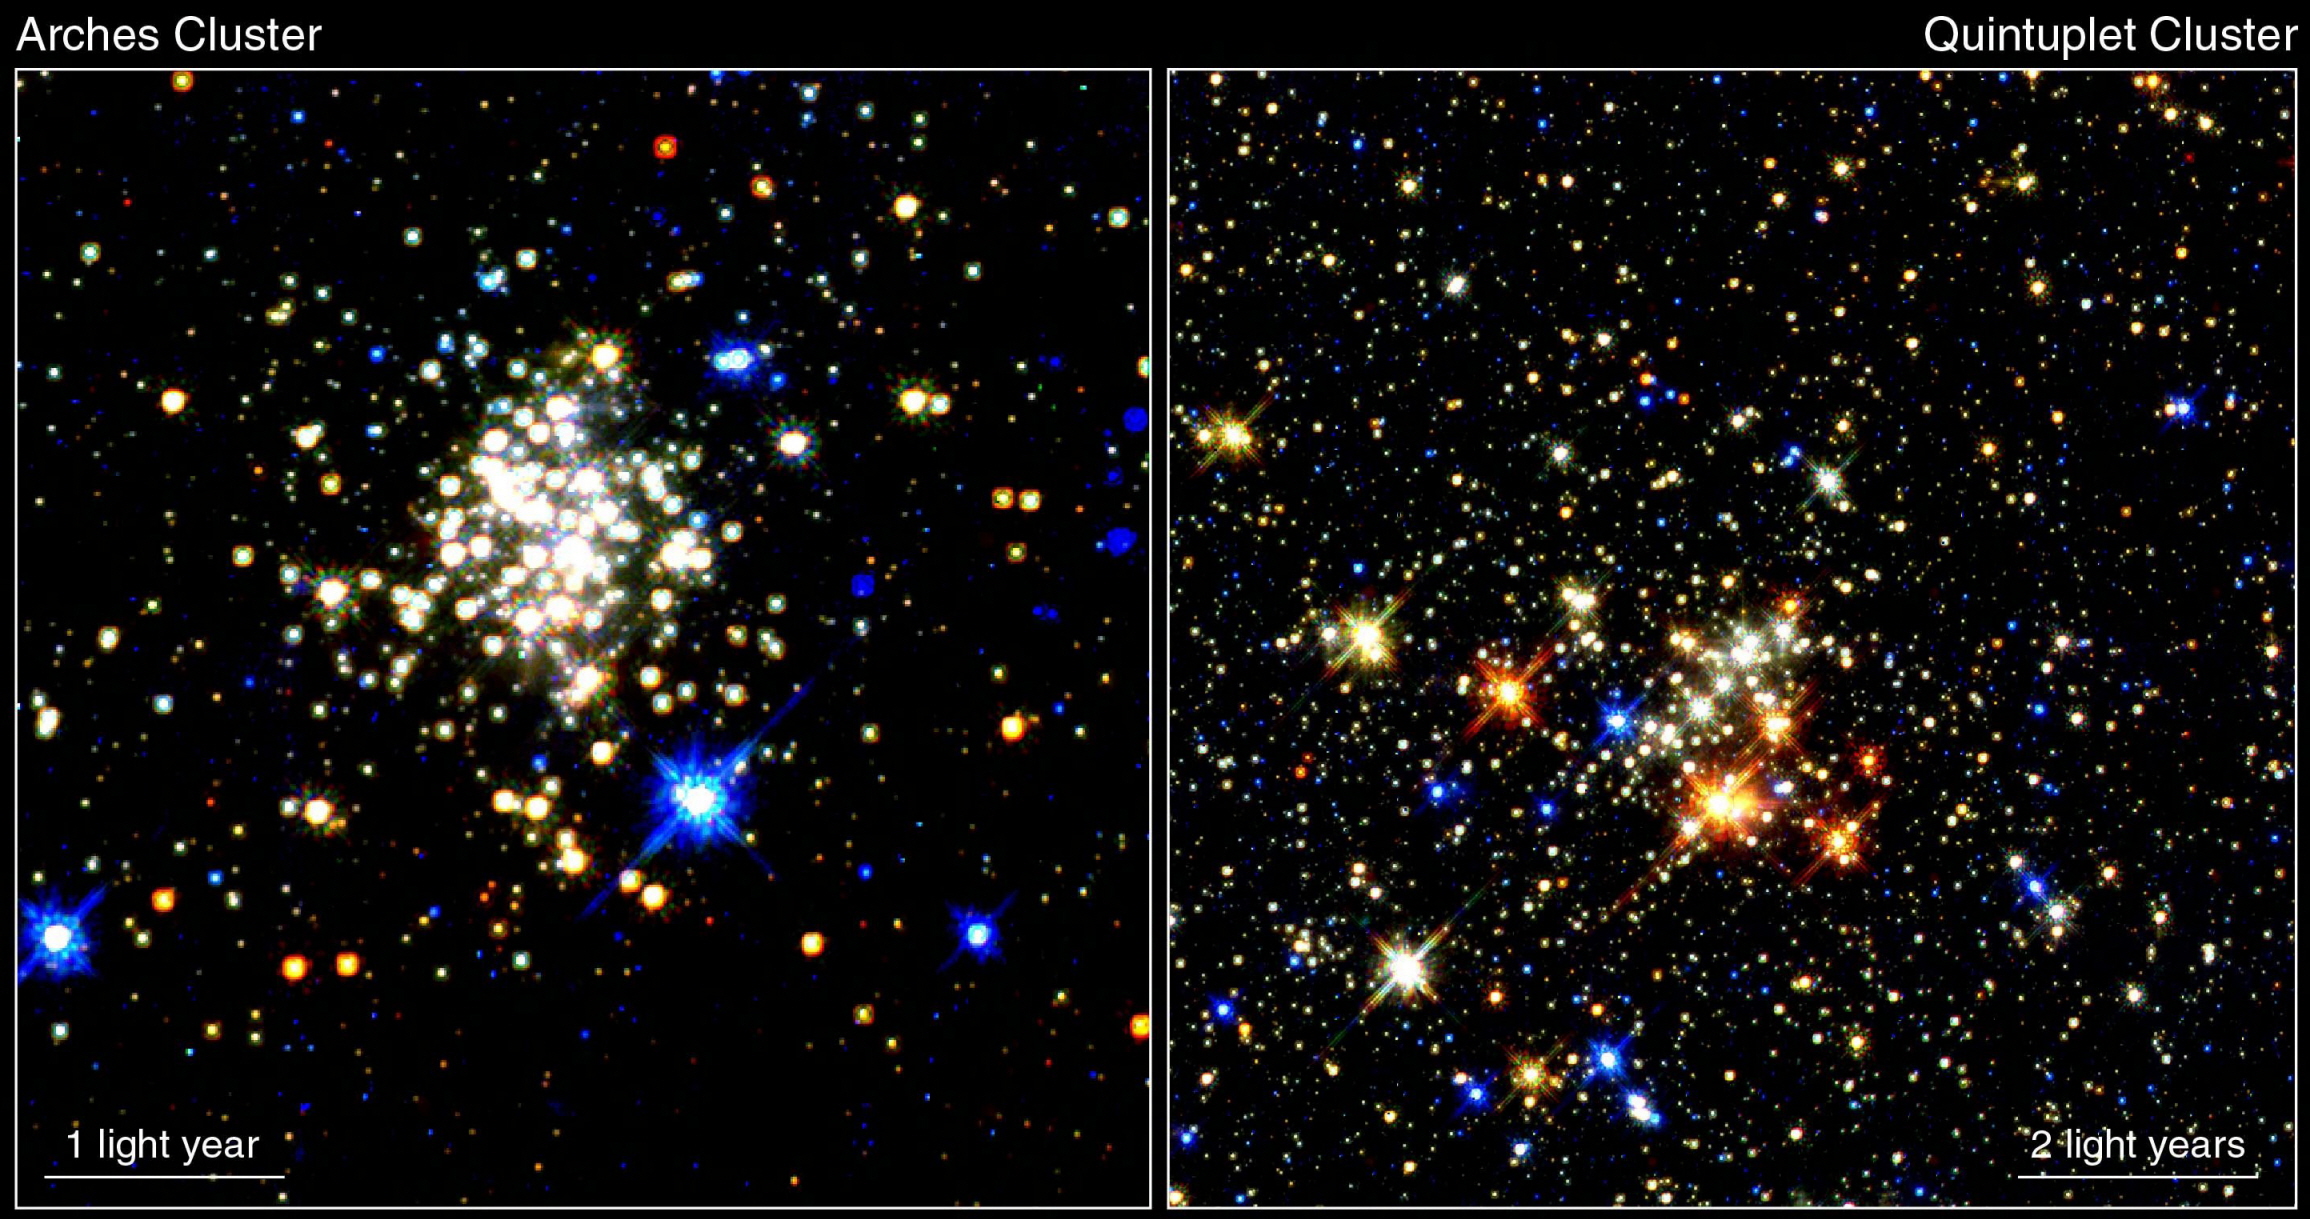 왼쪽:아르케스 성단(Arches cluster) 1 light year, 오른쪽:다섯 쌍둥이성단(Quintuplet cluster) 2 light years